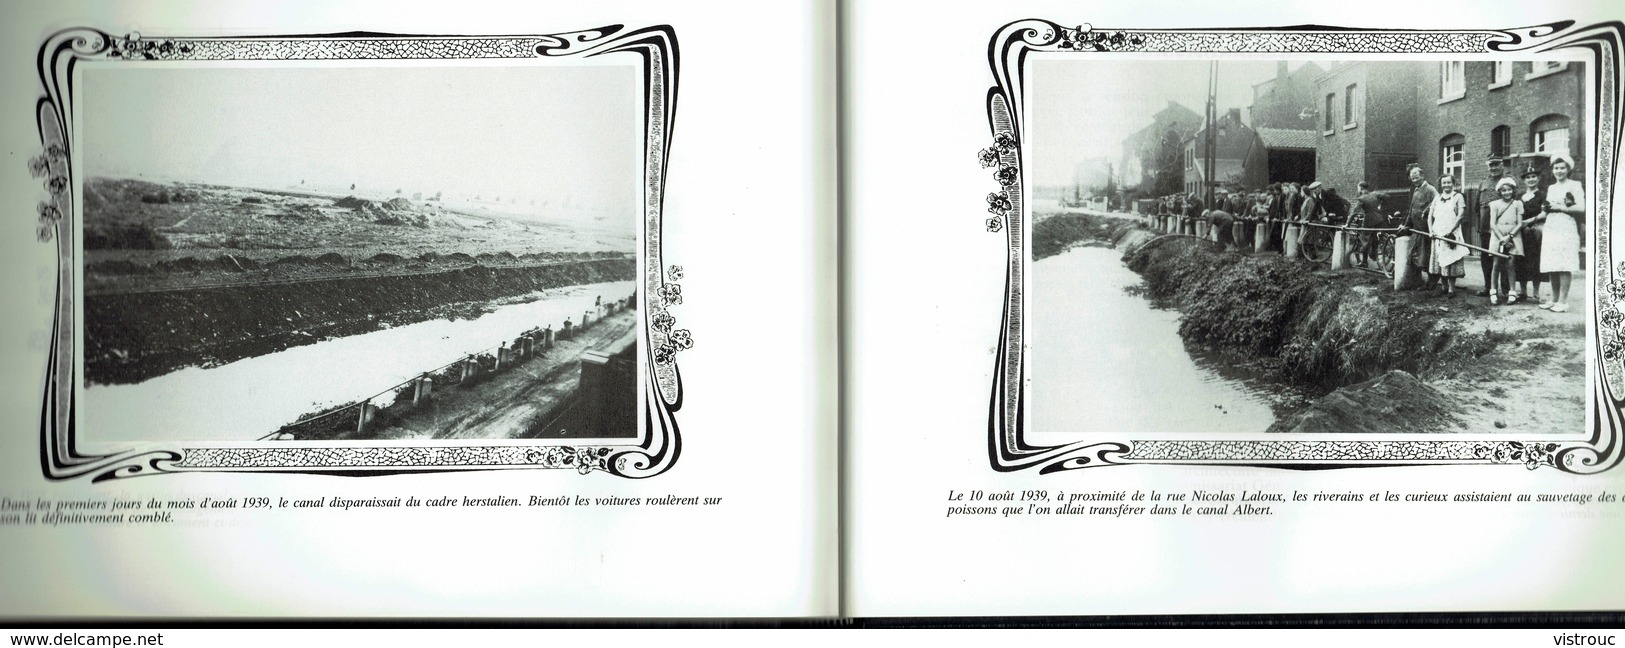 HERSTAL En Cartes Postales - T II - Edition E. DUMONT, Liège - 1986 - 4 Scans. - Livres & Catalogues